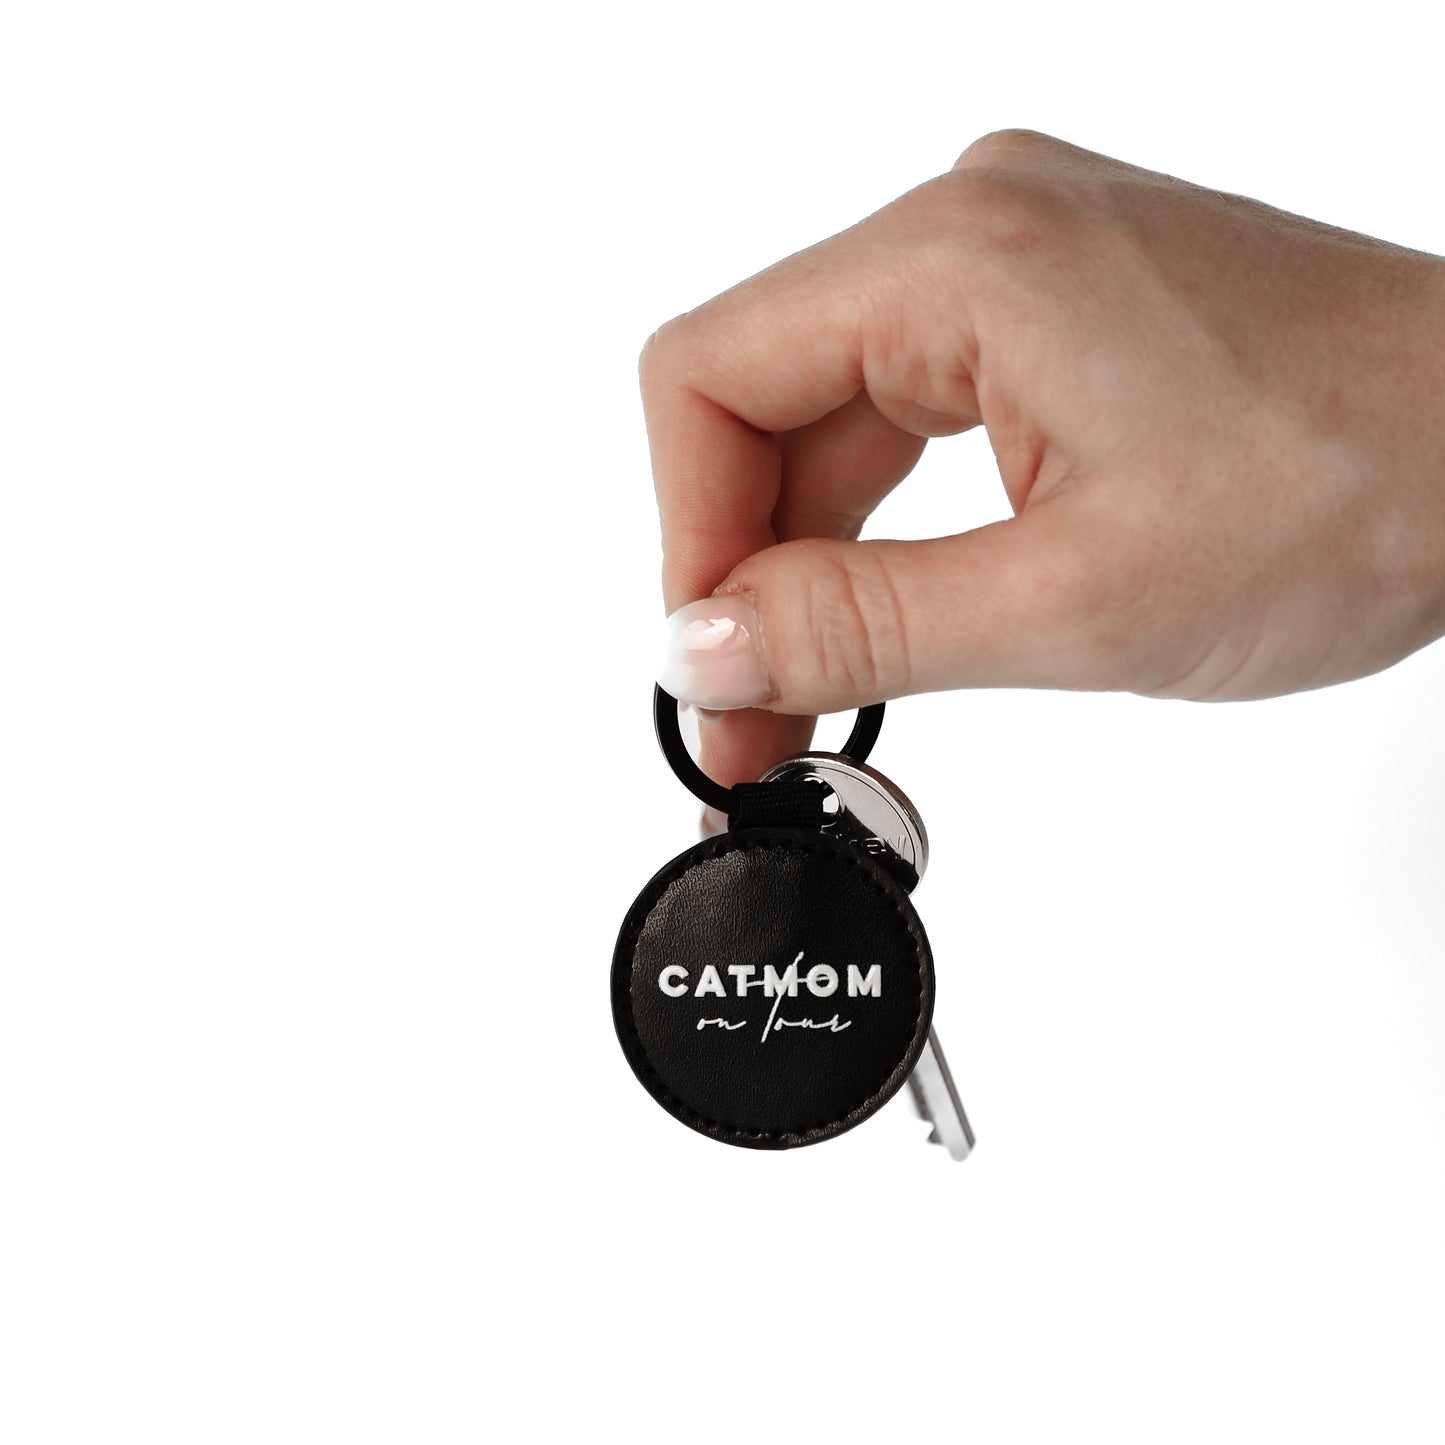 Catmom on Tour Schlüsselanhänger in schwarz mit Schlüssel